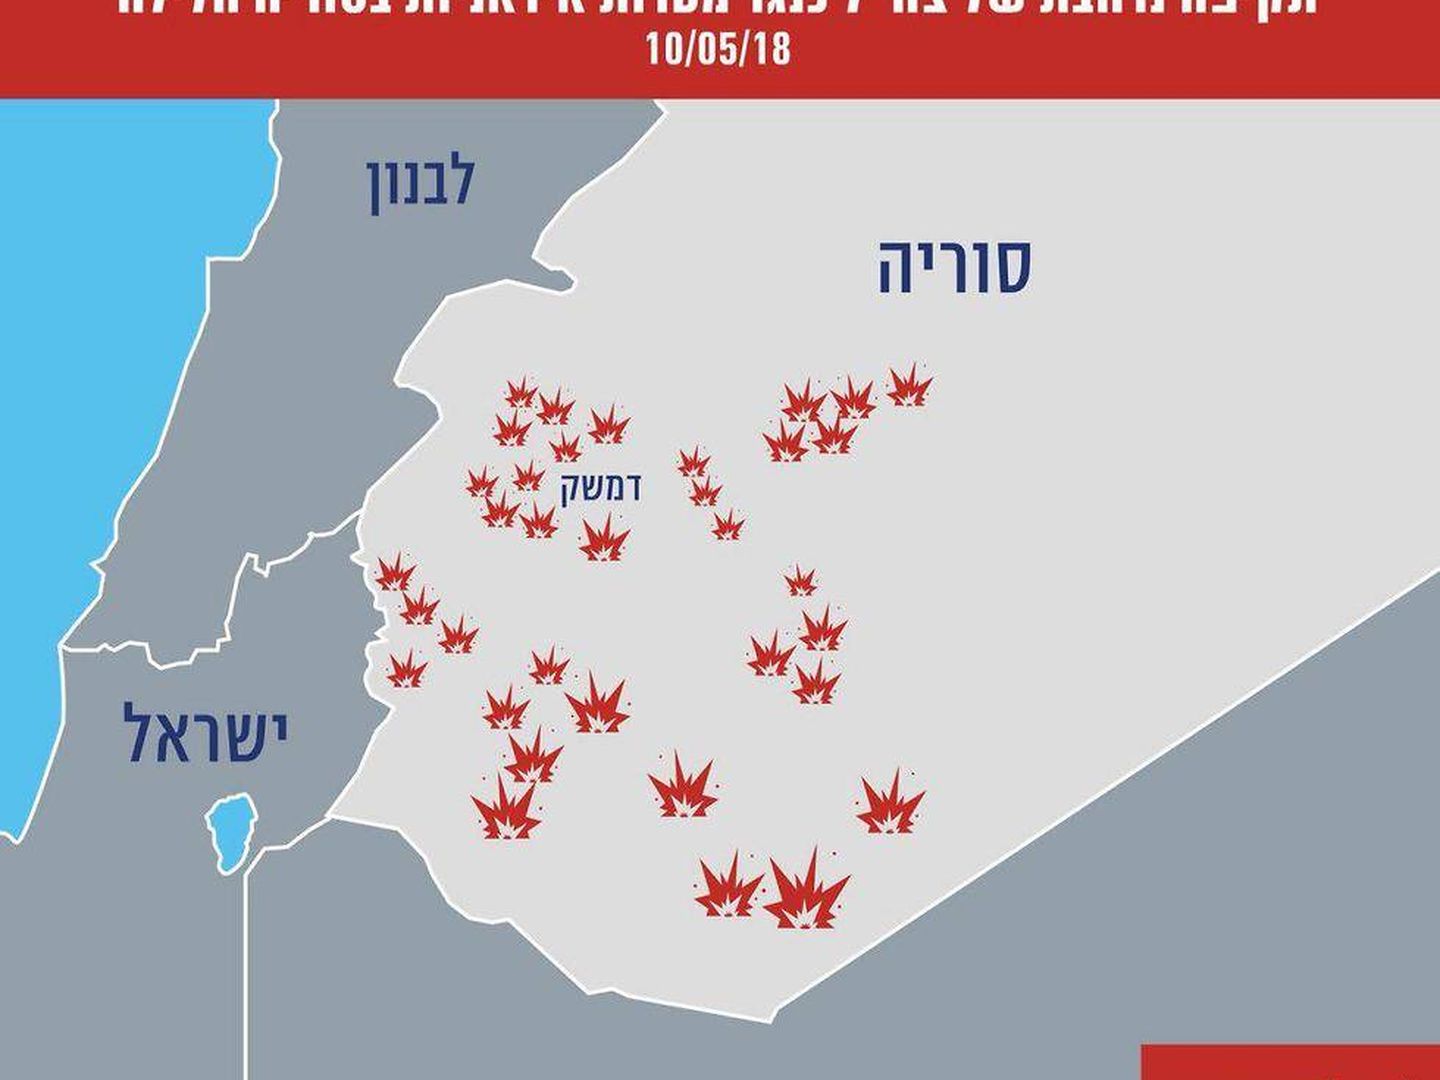 Los objetivos atacados por Israel en Siria, en un gráfico difundido por las IDF